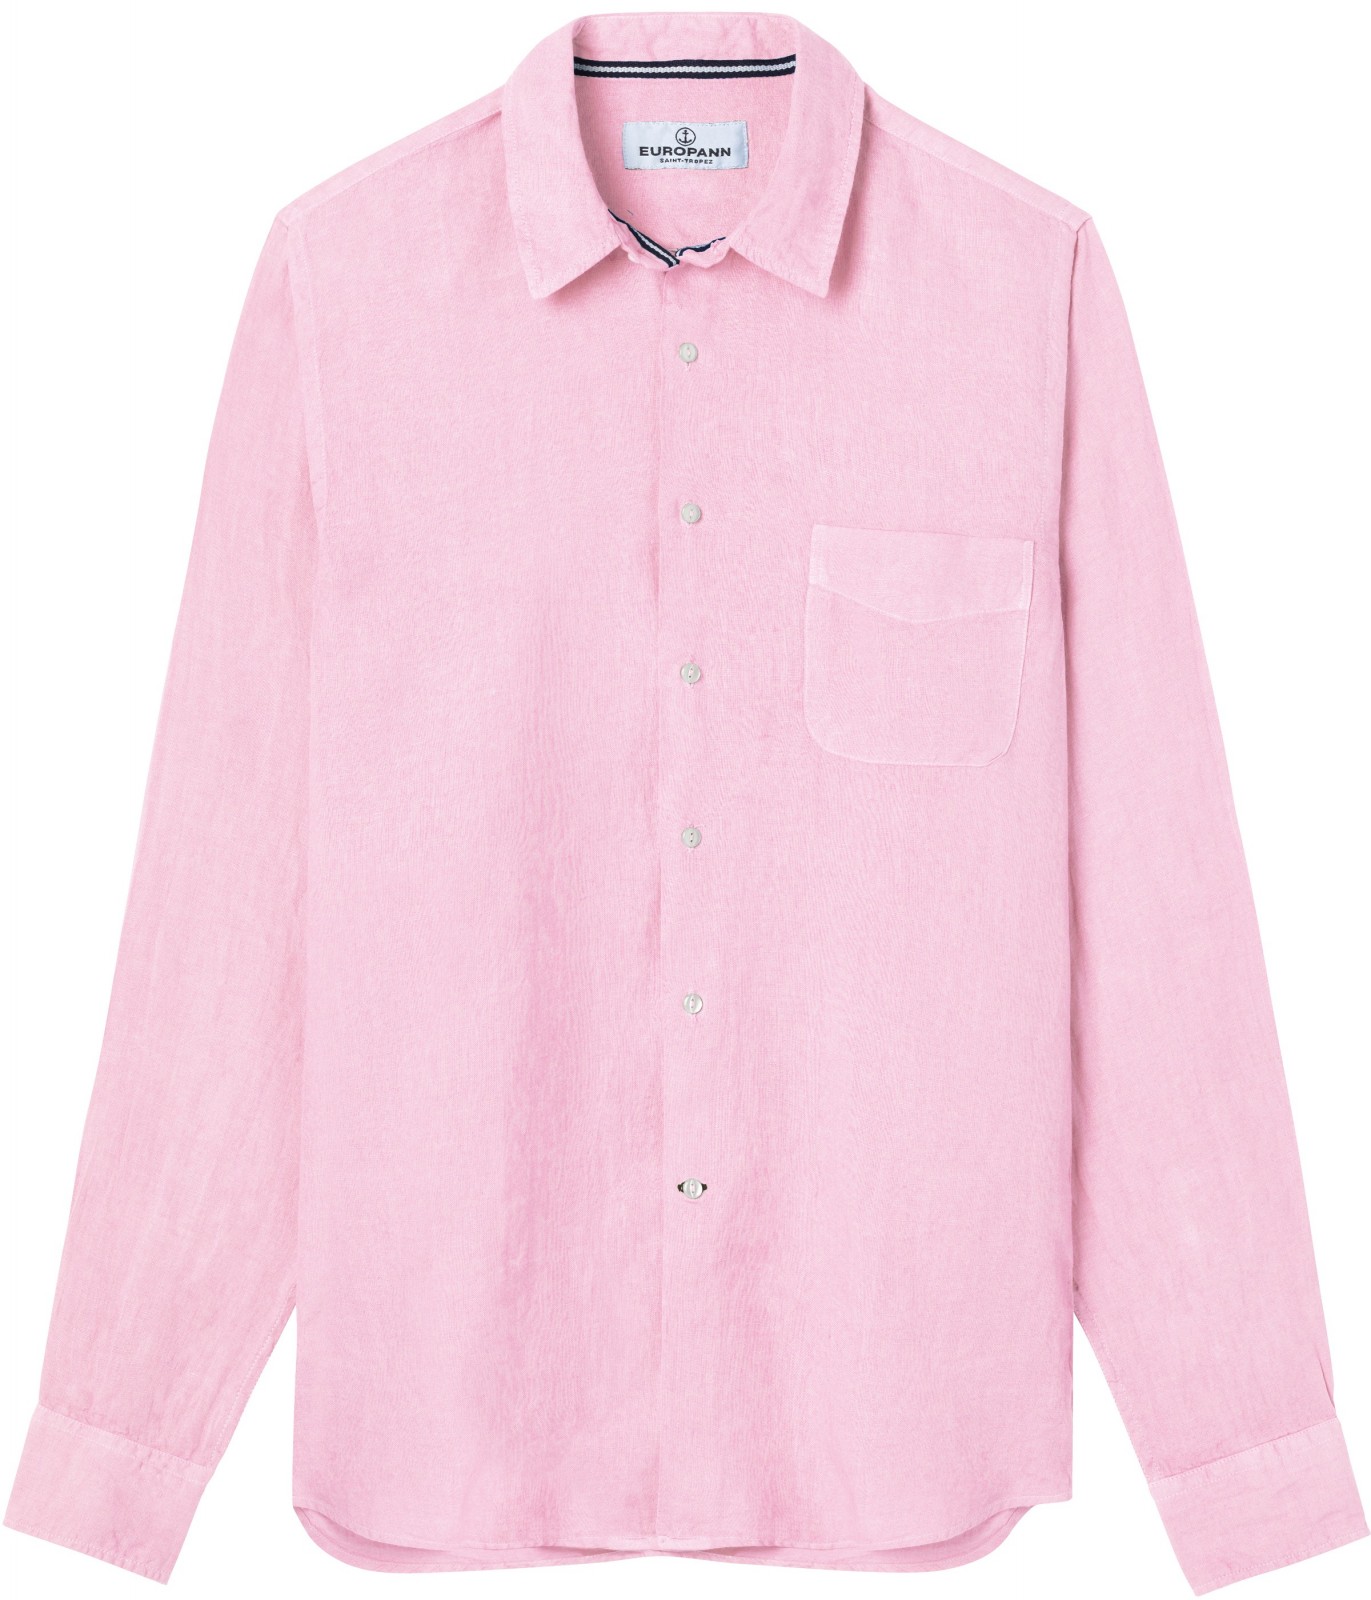 Diva - Plain Linen Shirt Pink 3XL Pink Europann